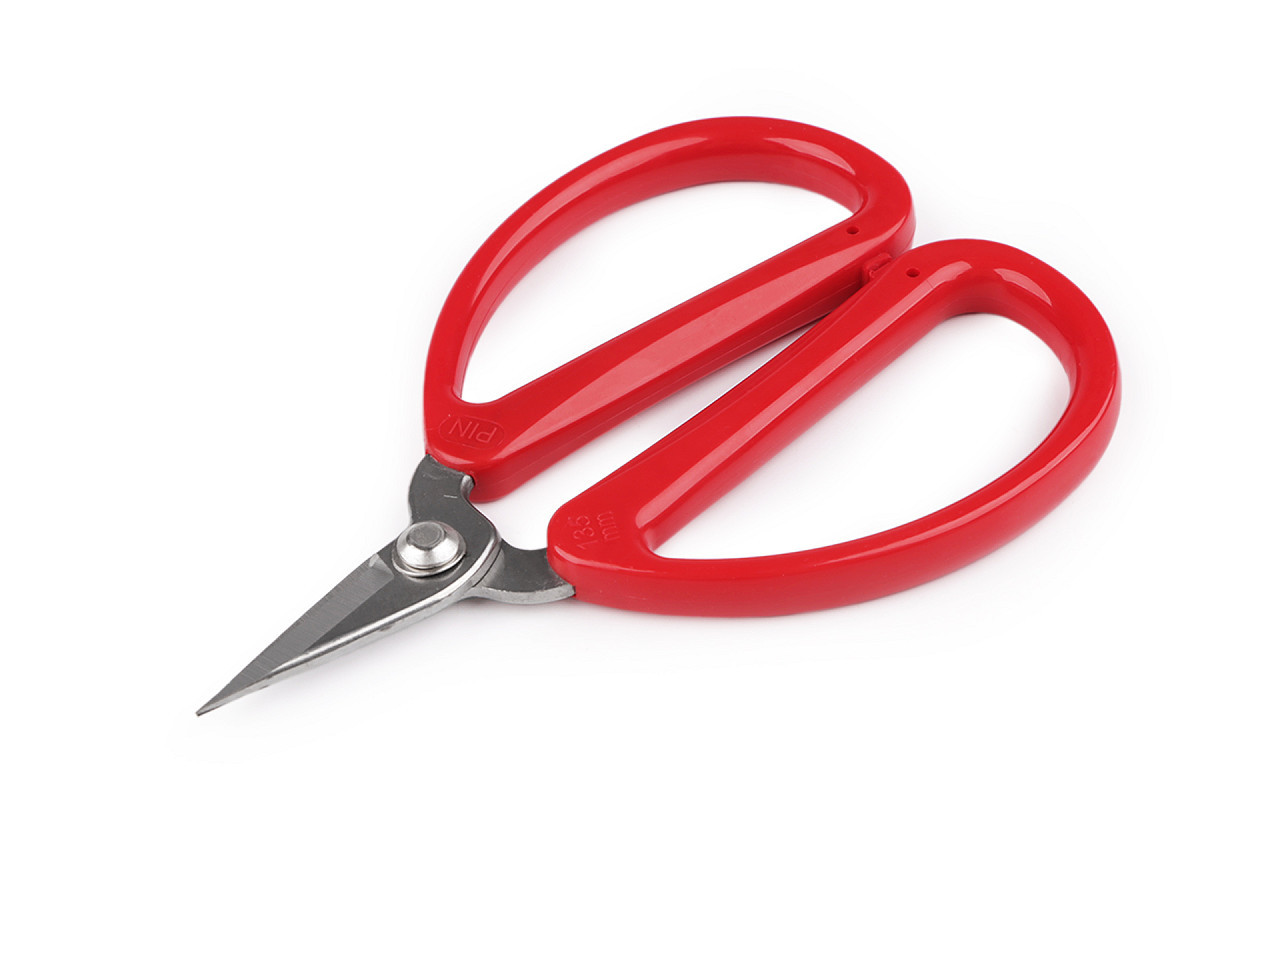 Nůžky odstřihávací PIN délka 13,5 cm, barva červená